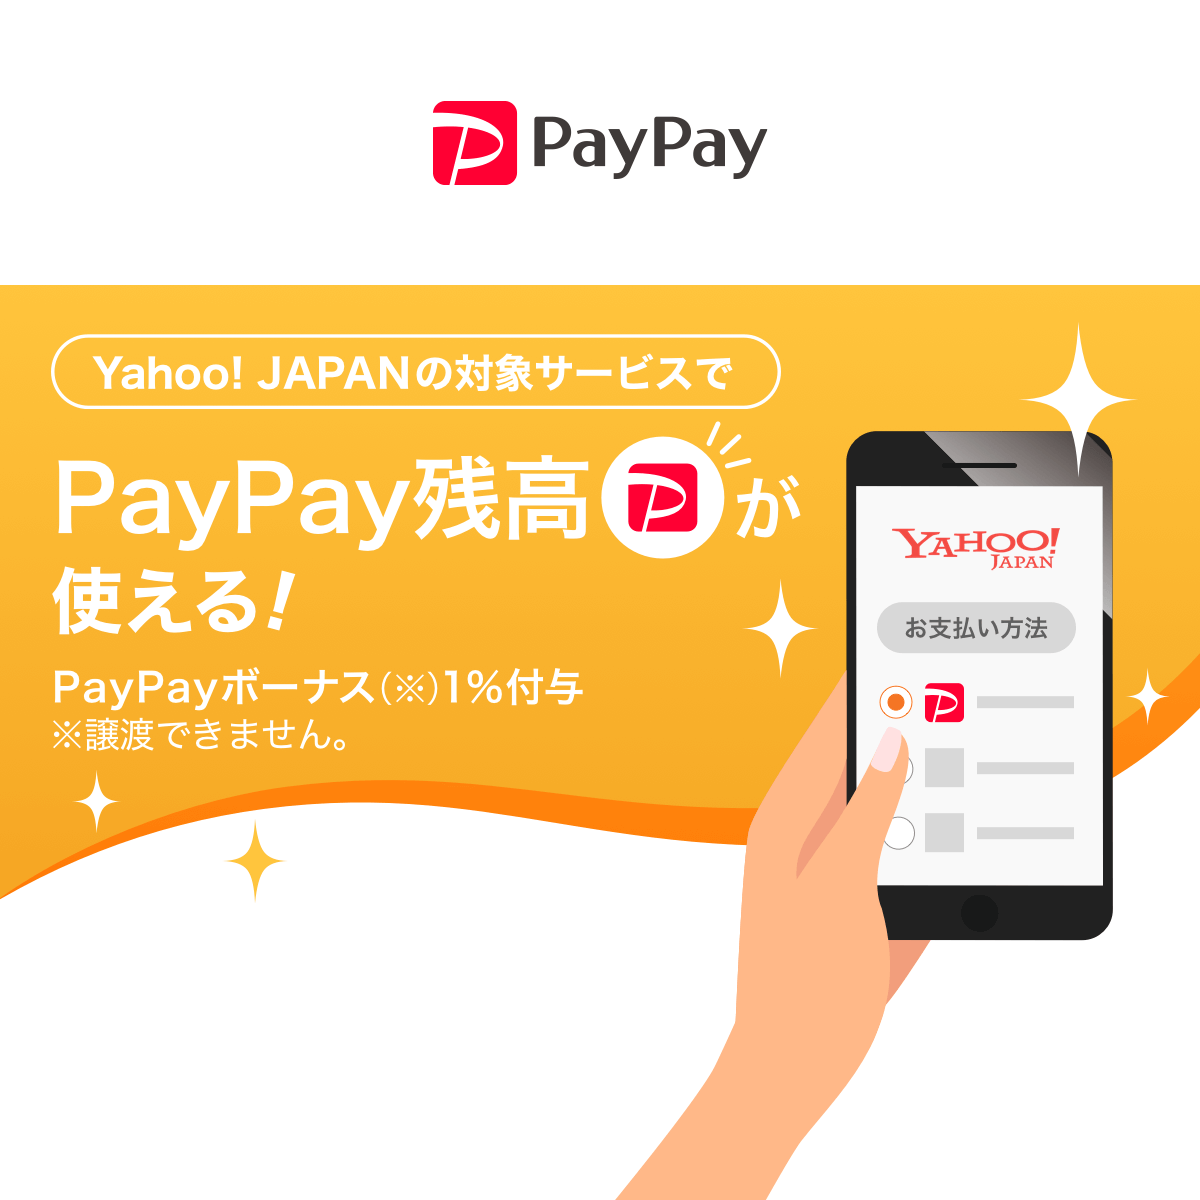 PayPay_Yahoo!JAPANの対象サービスでPayPay残高が使える！_1200 x 1200のバナーデザイン